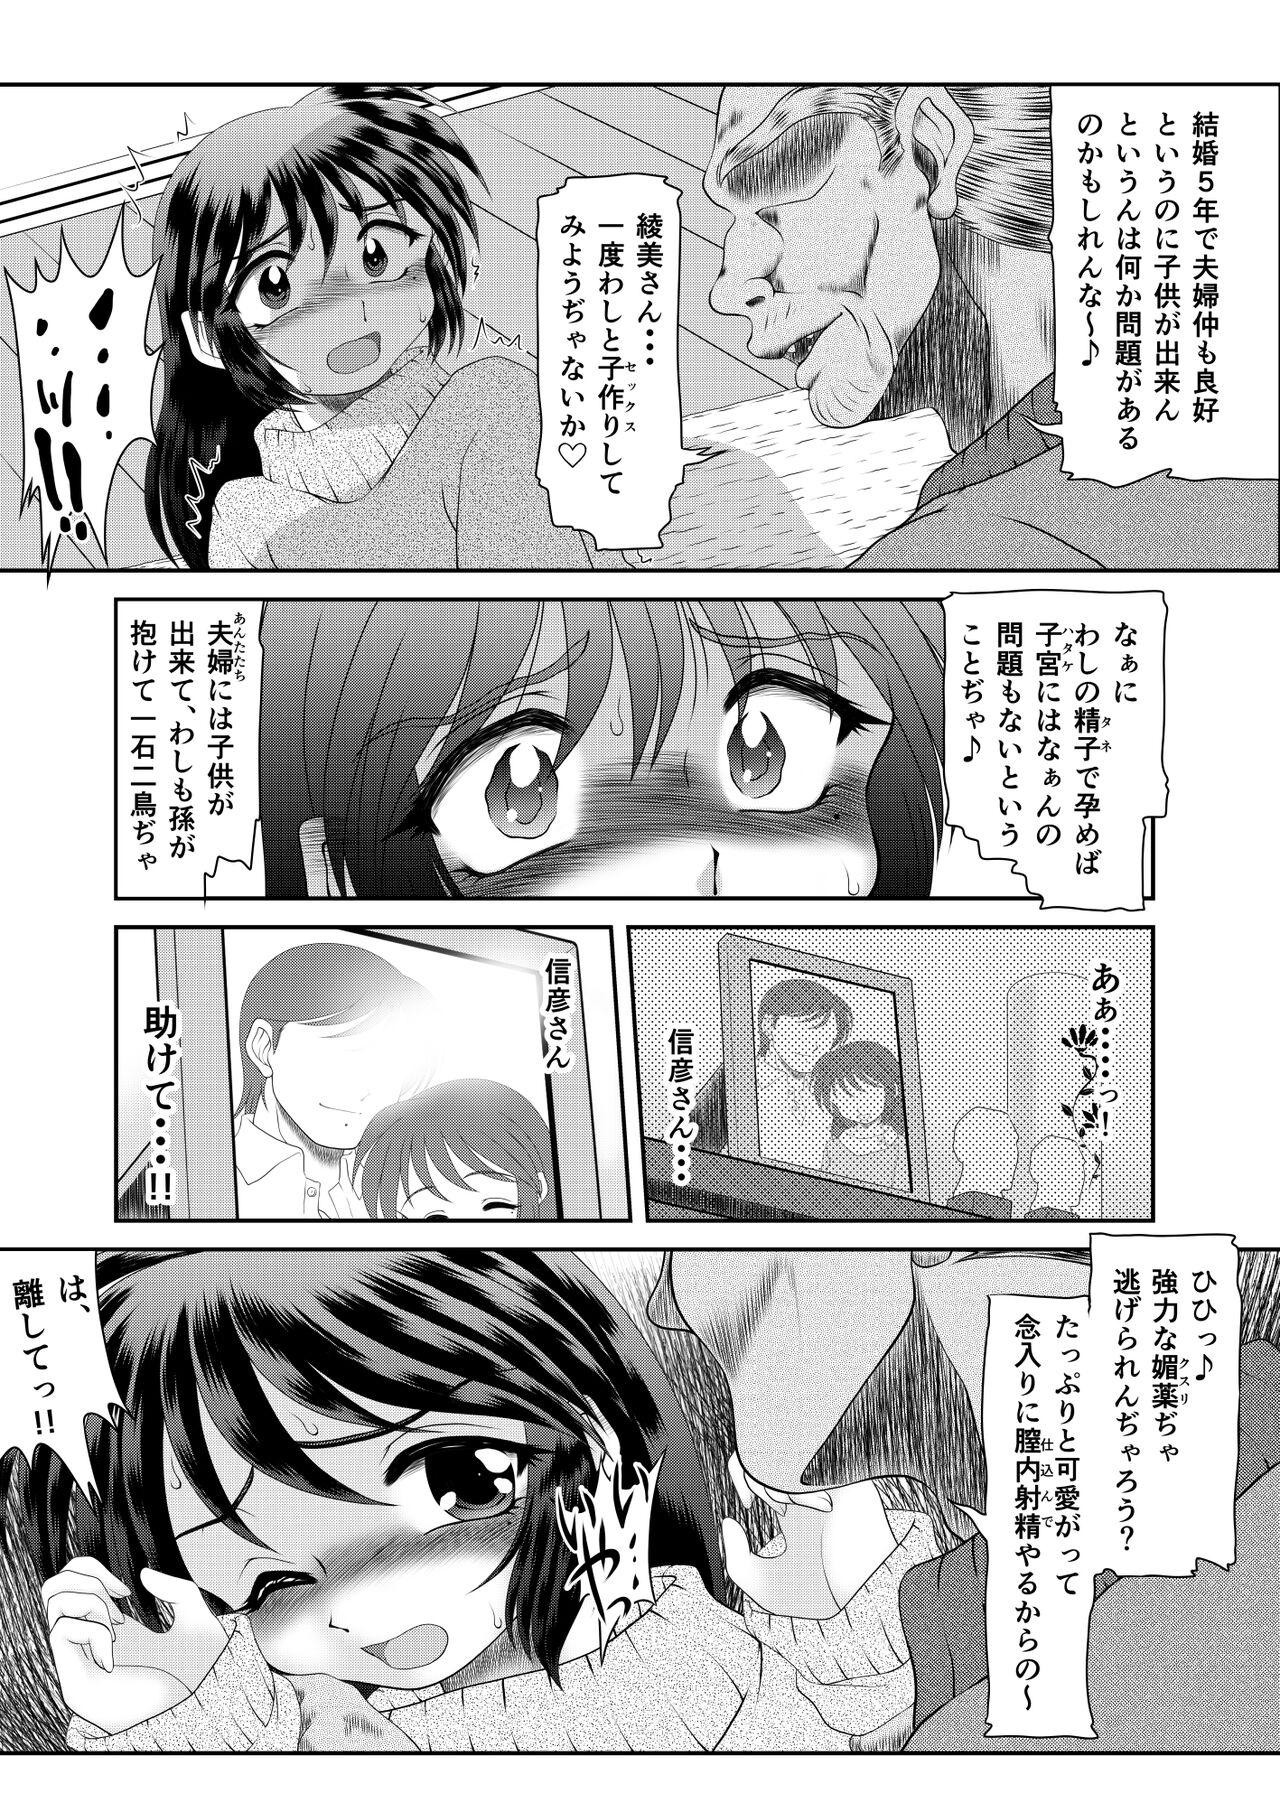 Girl Sucking Dick Watashi wa Chichi ga... Matome - Original Teamskeet - Page 8